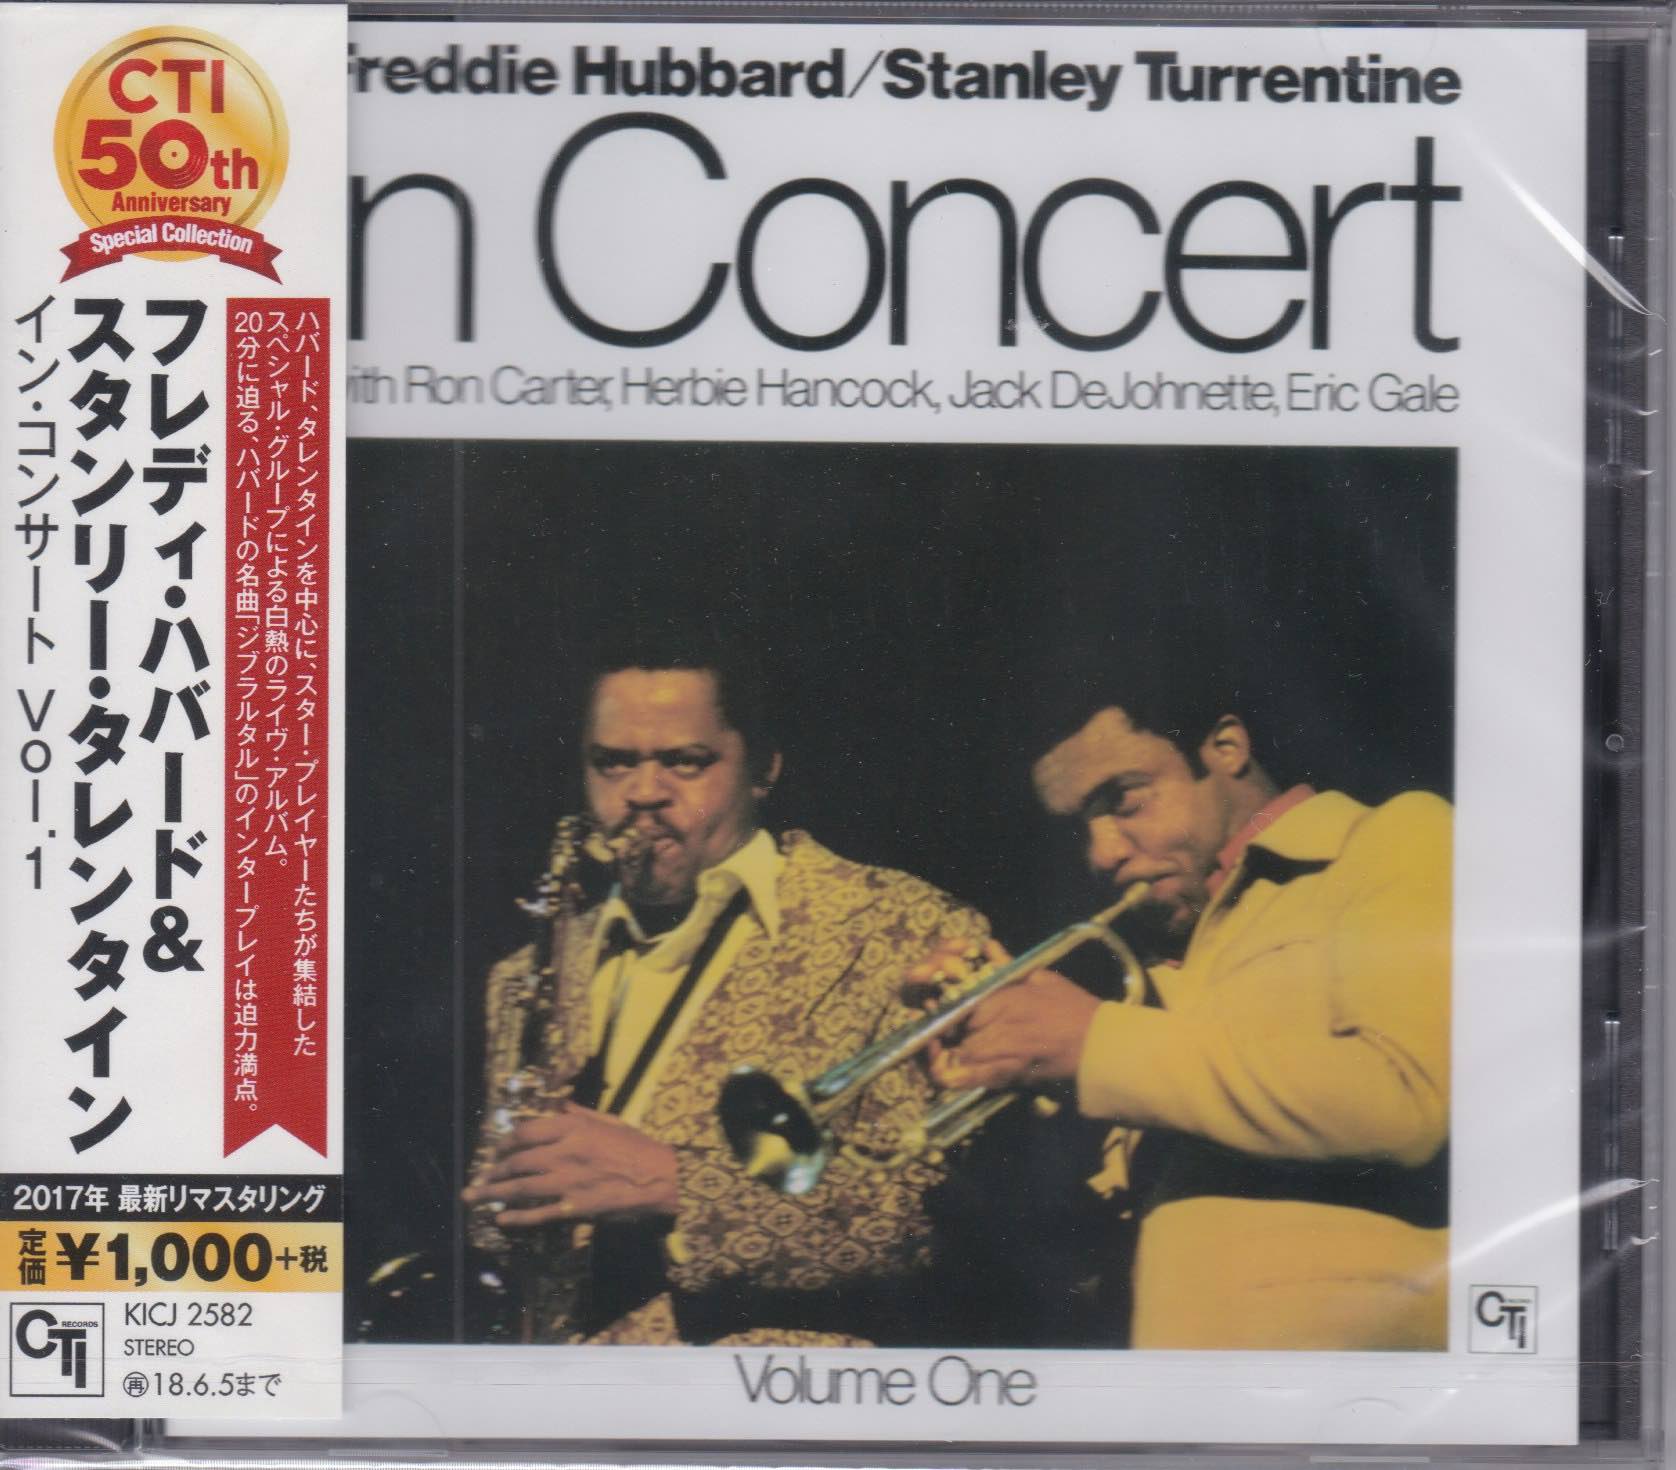 Freddie Hubbard / Stanley Turrentine ‎– In Concert Volume One